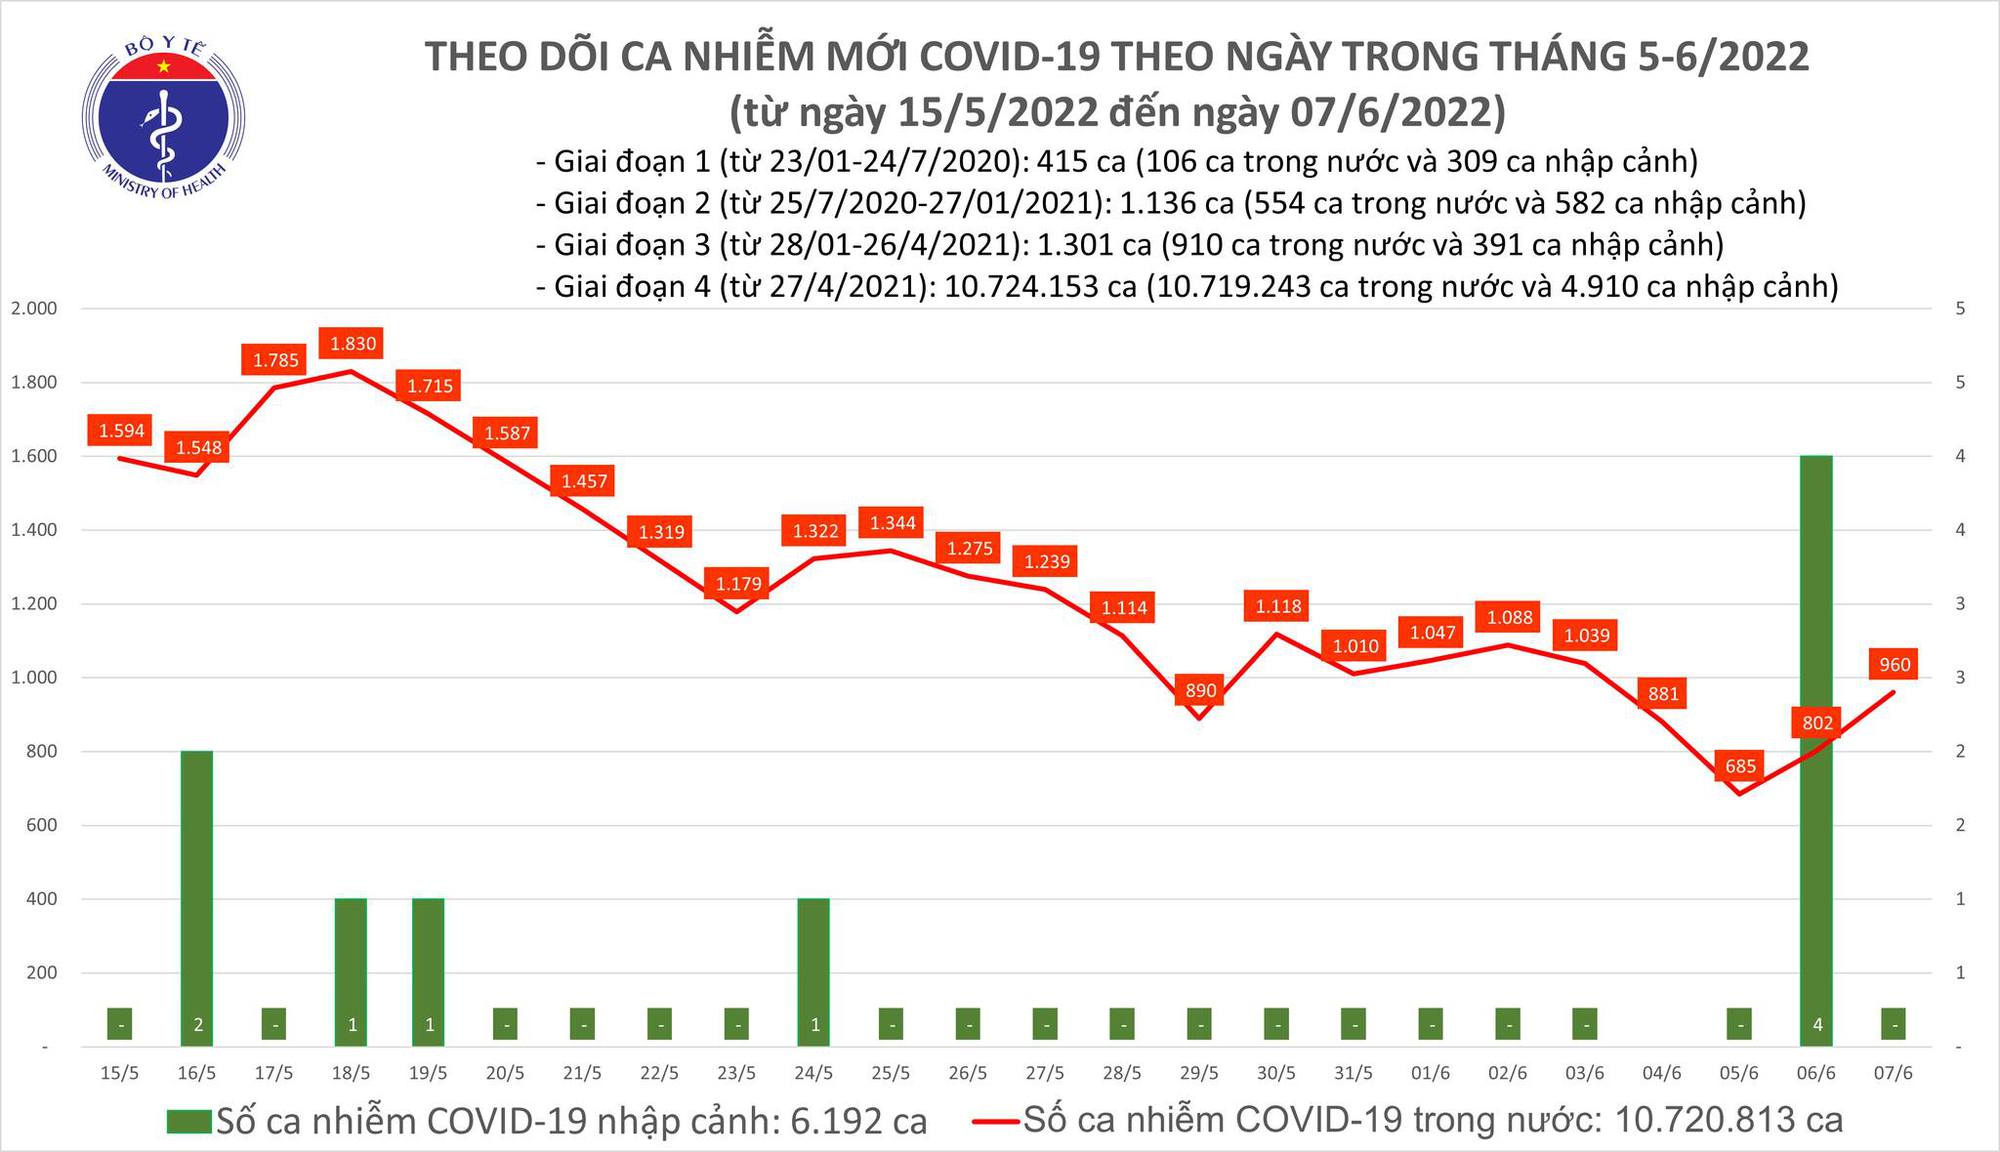 Ngày 7/6: Thêm 960 ca COVID-19; F0 khỏi bệnh gấp gần 10 lần mắc mới